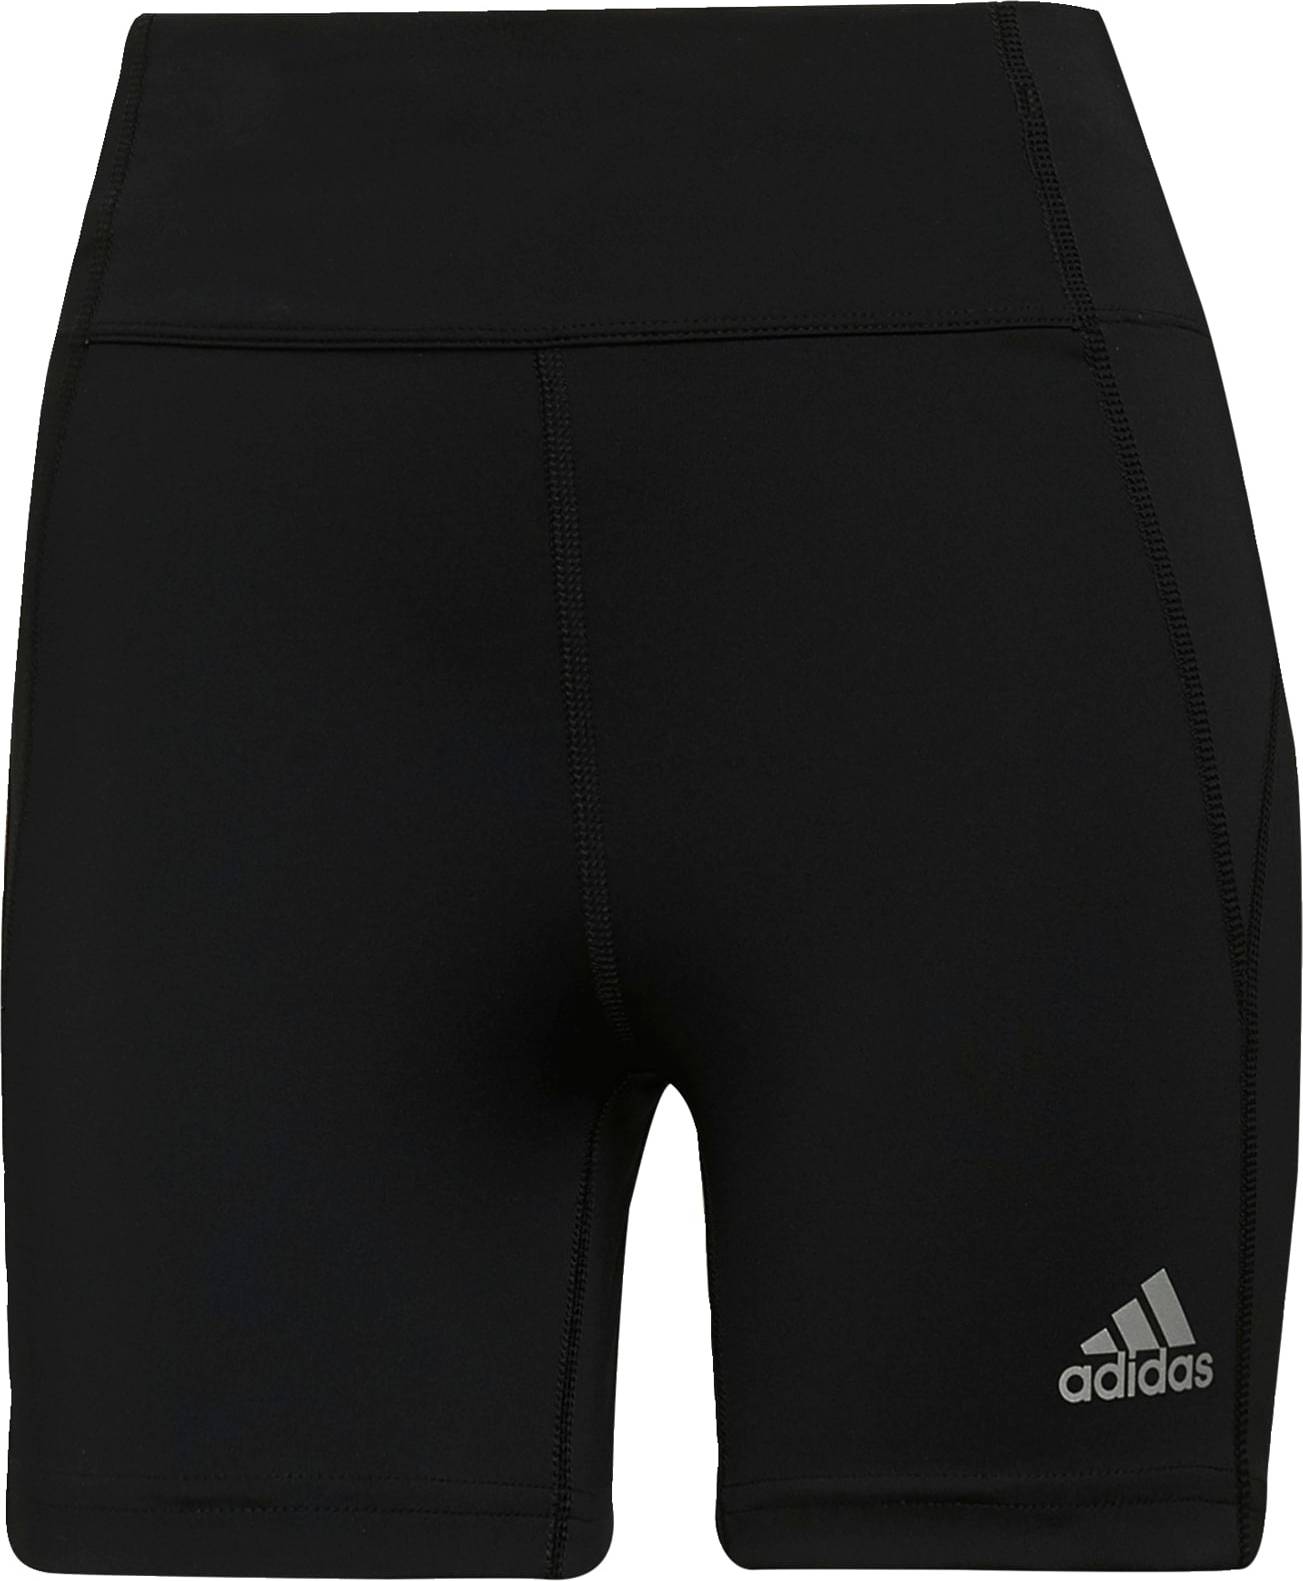 ADIDAS SPORTSWEAR Sportovní kalhoty šedá / černá